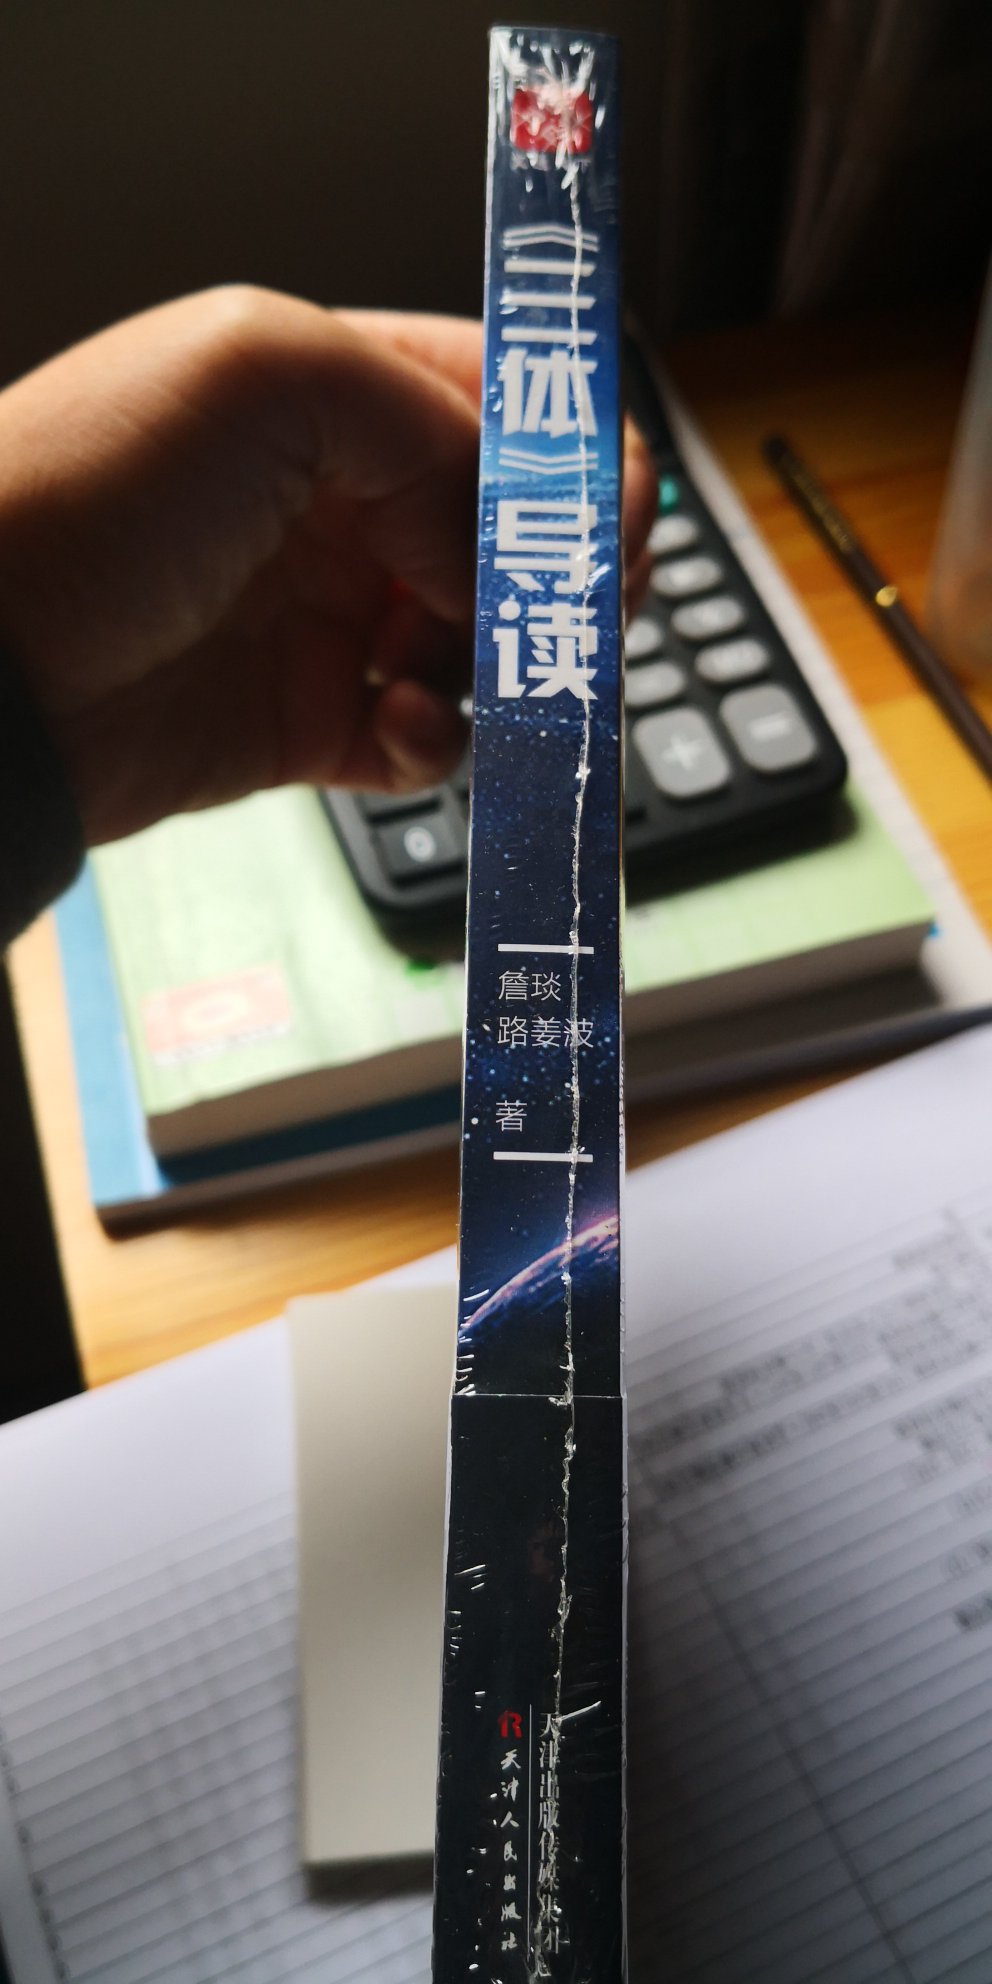 之前拜读过刘慈欣的现象级科幻大作典藏版《三体》～还是有很多没搞懂地方，也许是囫囵吞枣速度过快的缘故吧，亦或是别太较真。弄本导读，看看有没解惑的点能Get到。